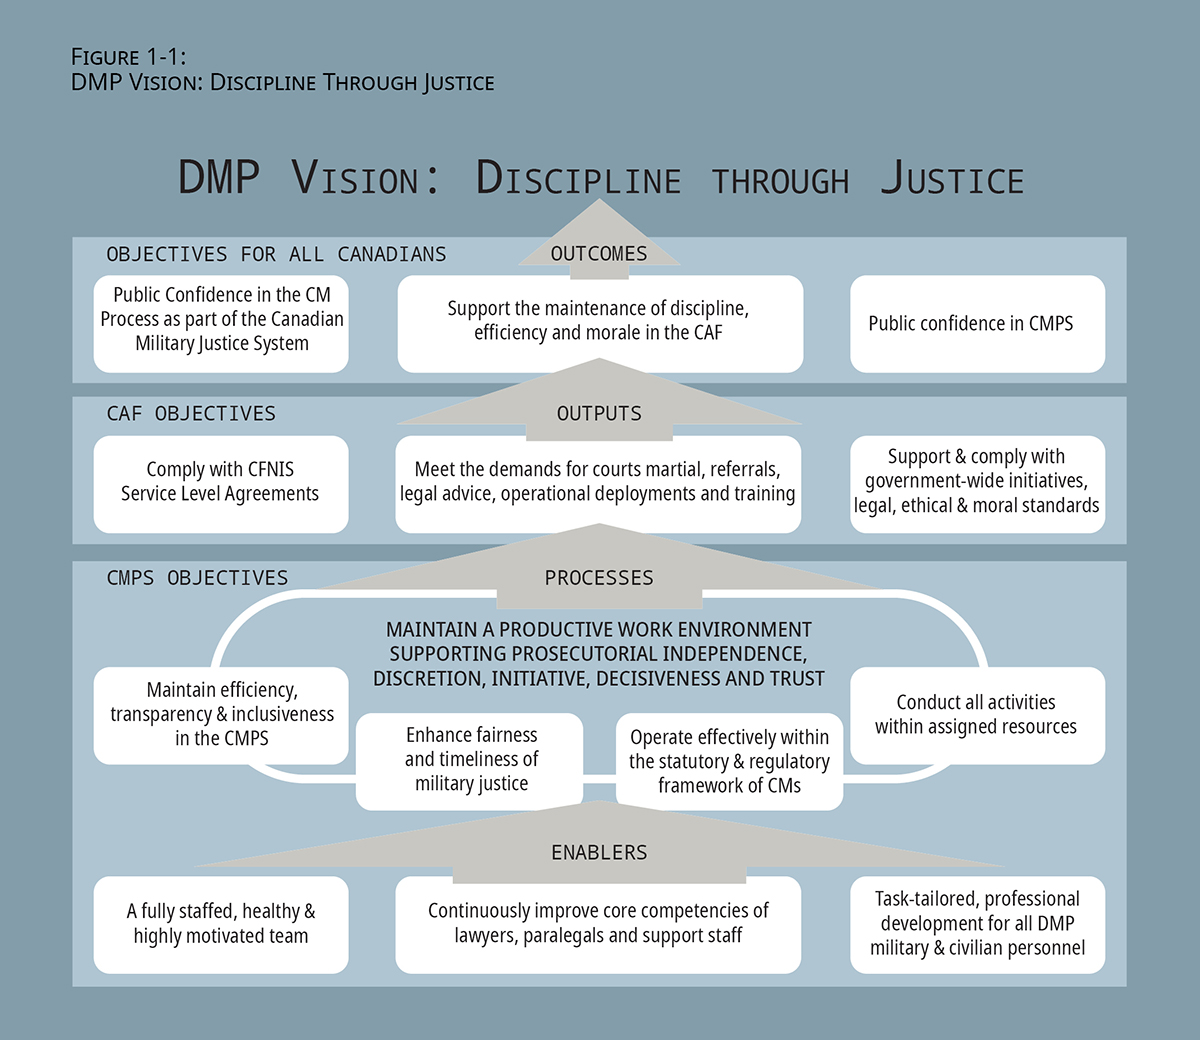 Figure 1-1: DMP Vision: Discipline Through Justice. Long description follows